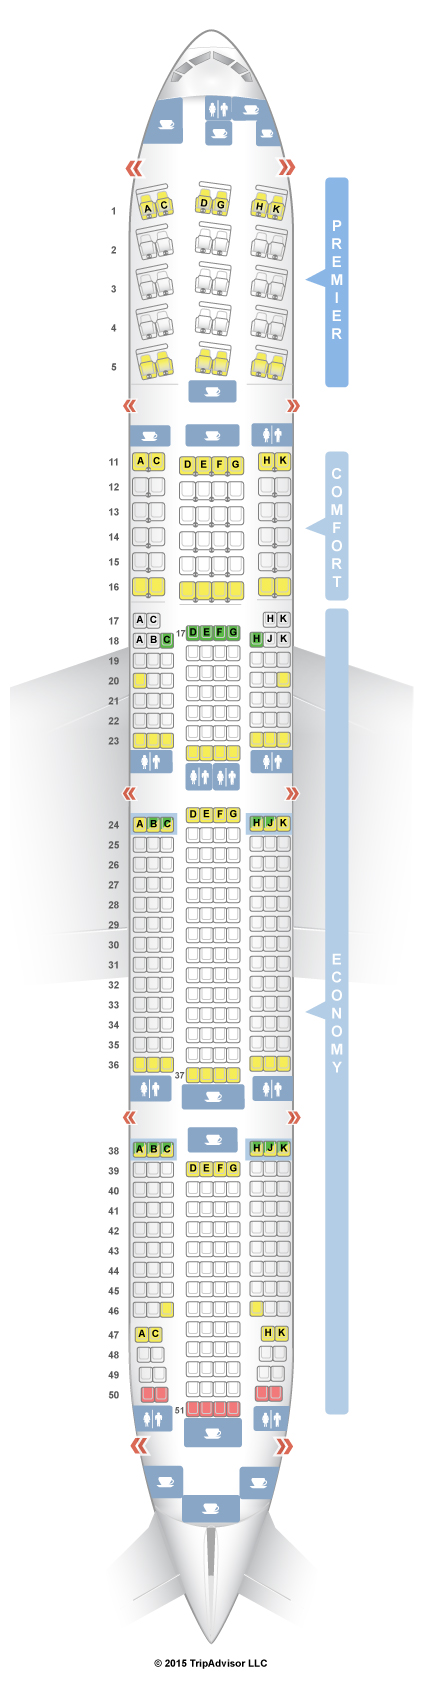 Aeroflot Boeing 777 300er Seating Chart